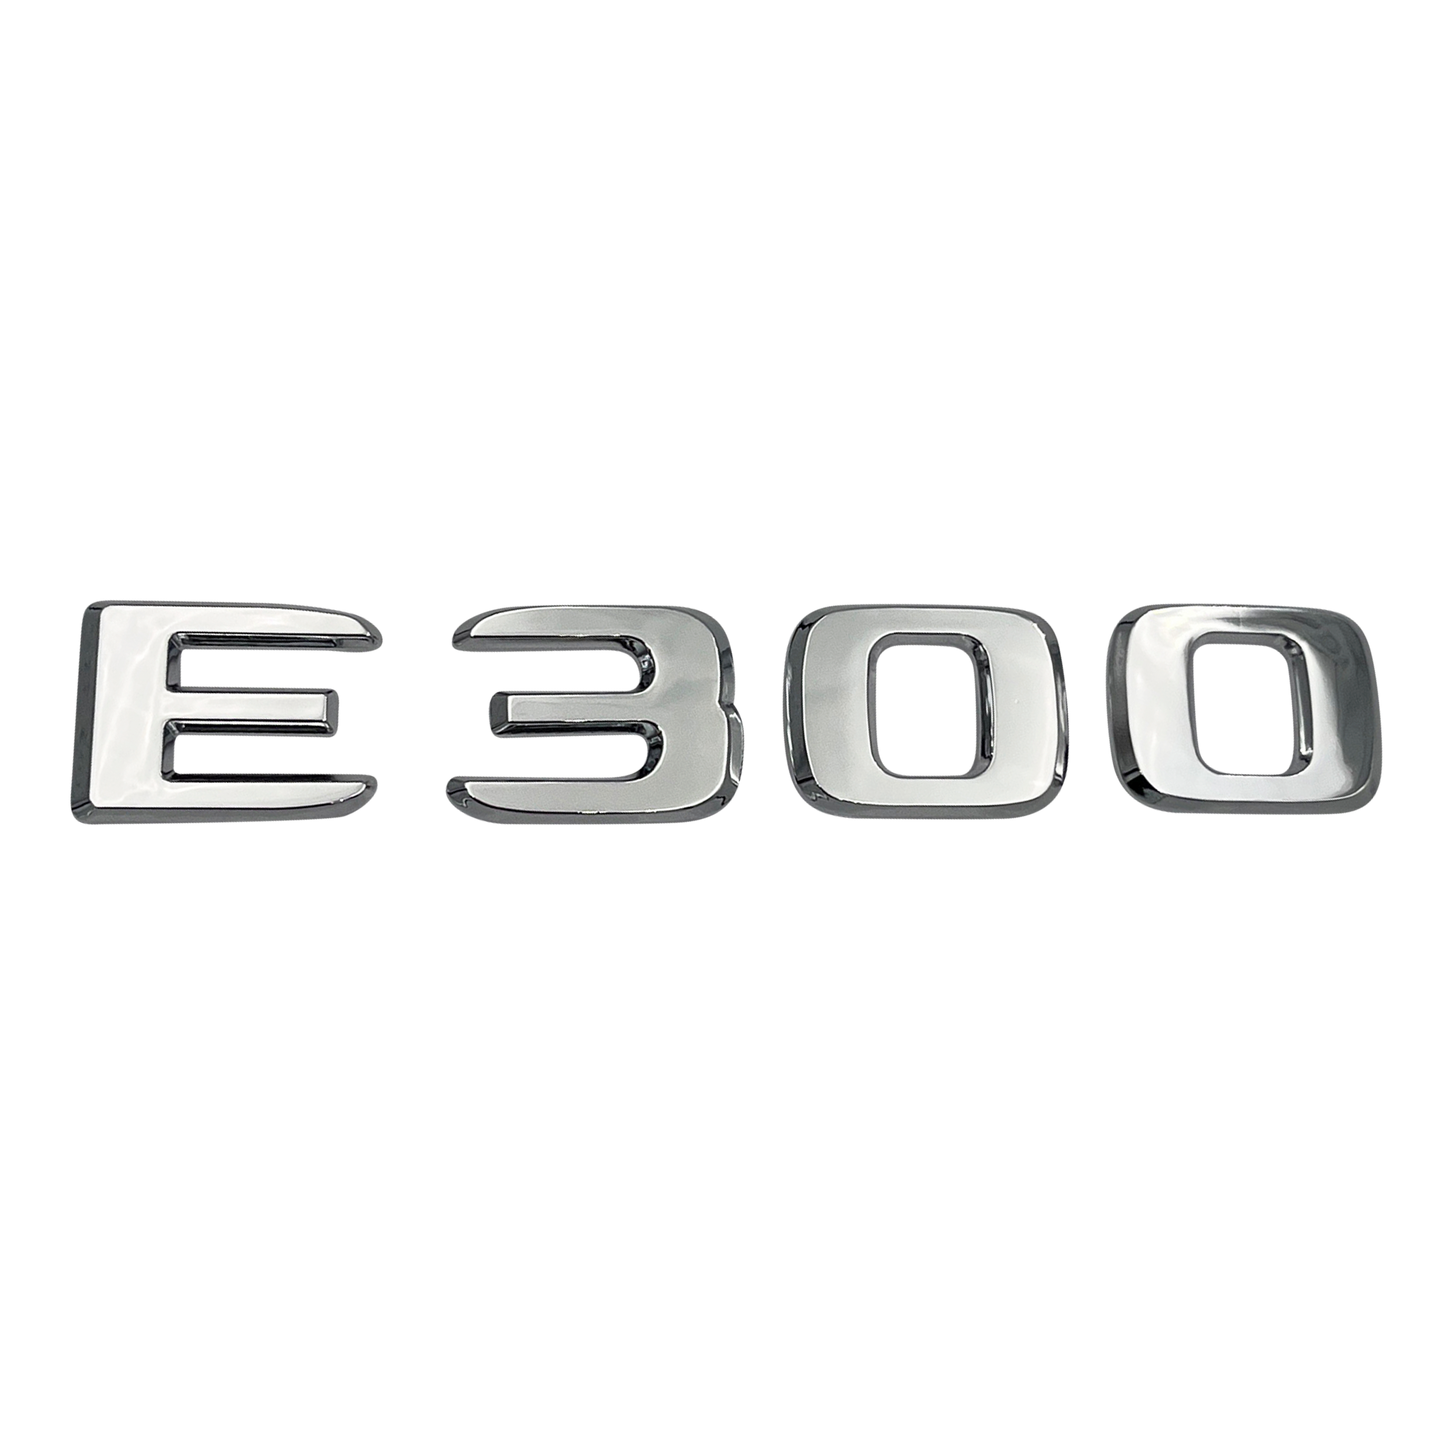 Chrome Mercedes E300 Emblem 